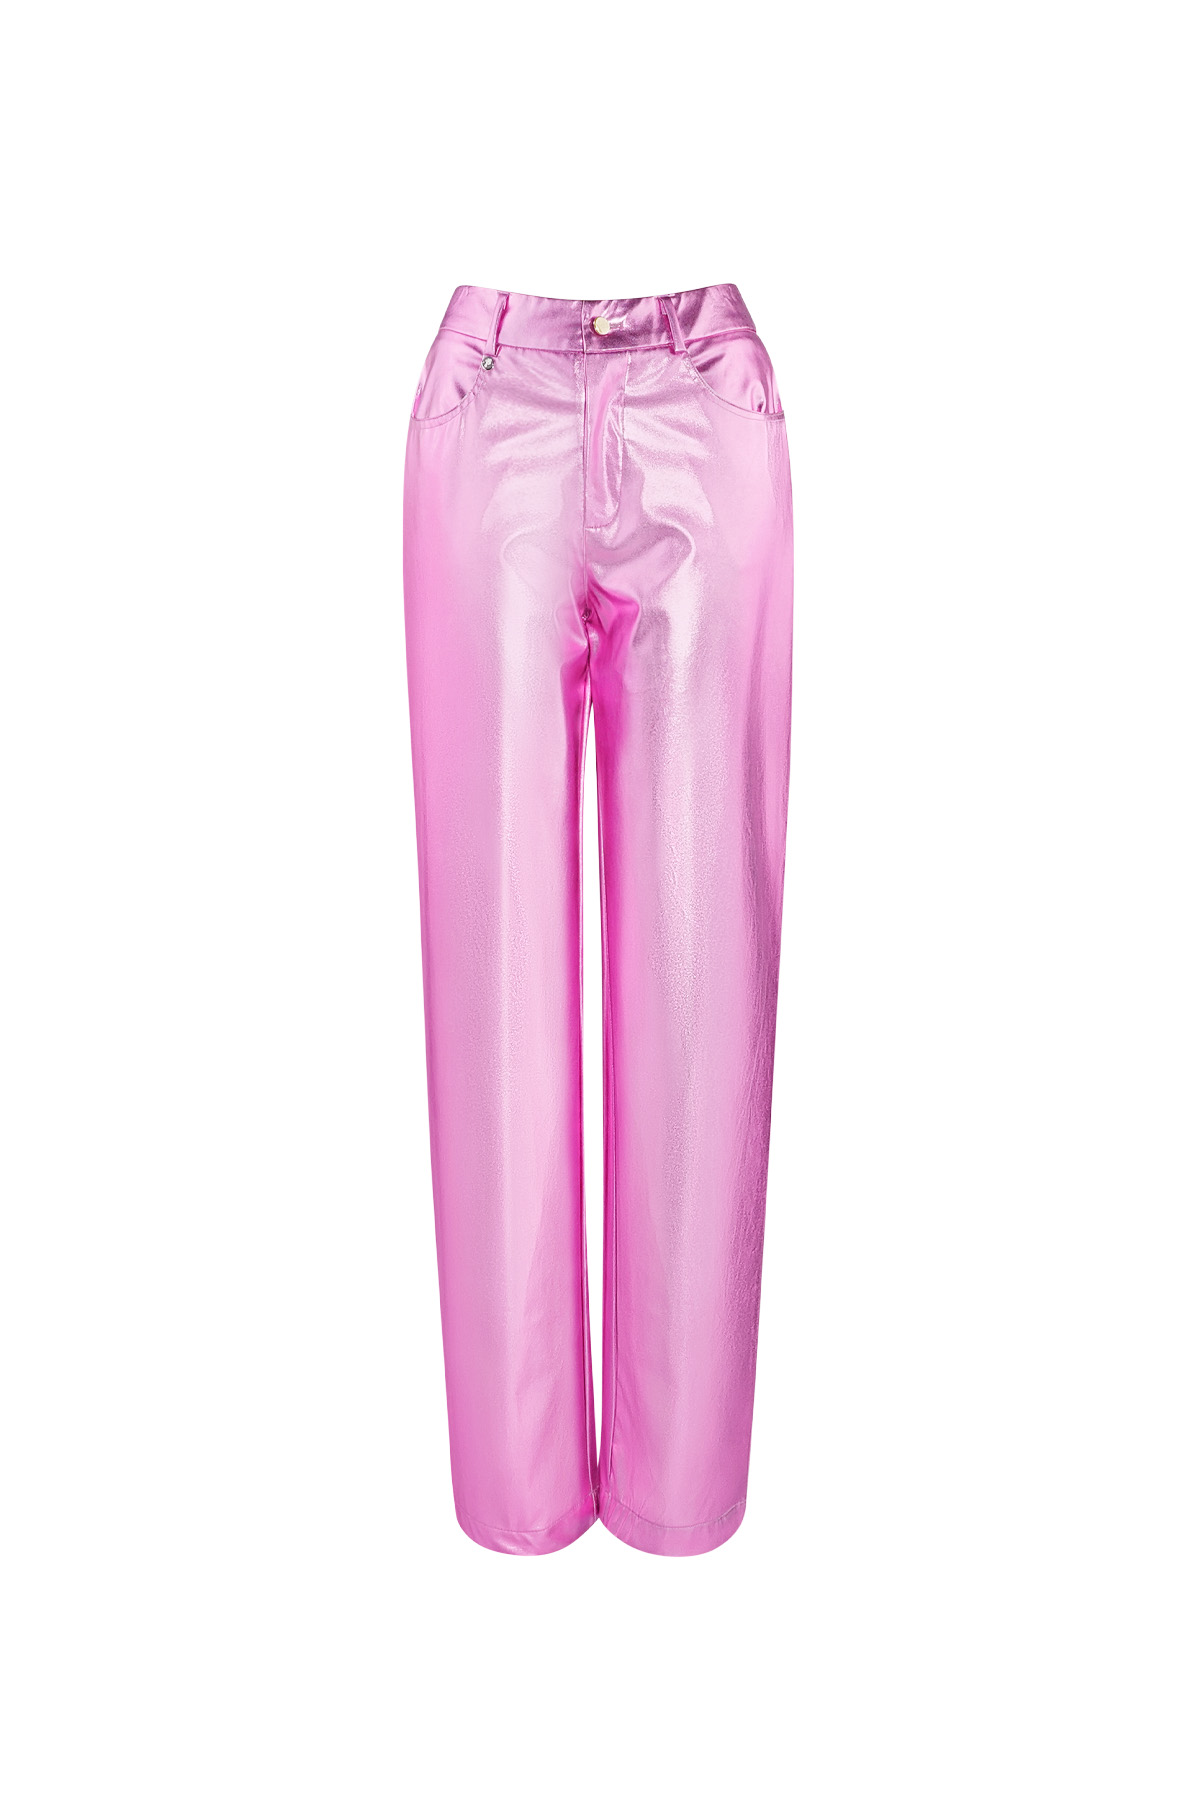 Metallic pants - pink